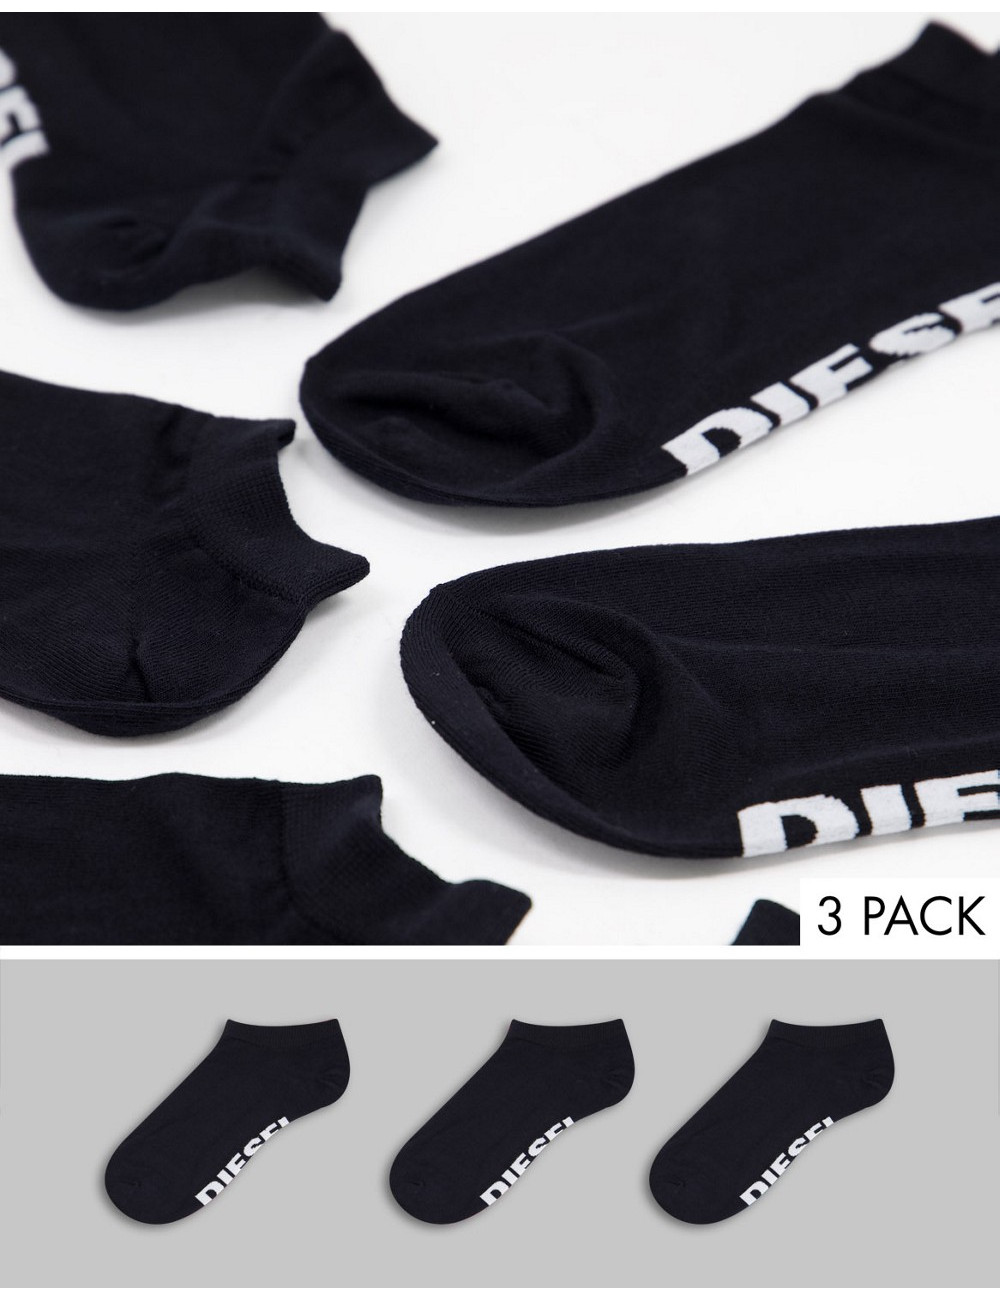 Diesel 3 pack socks in black